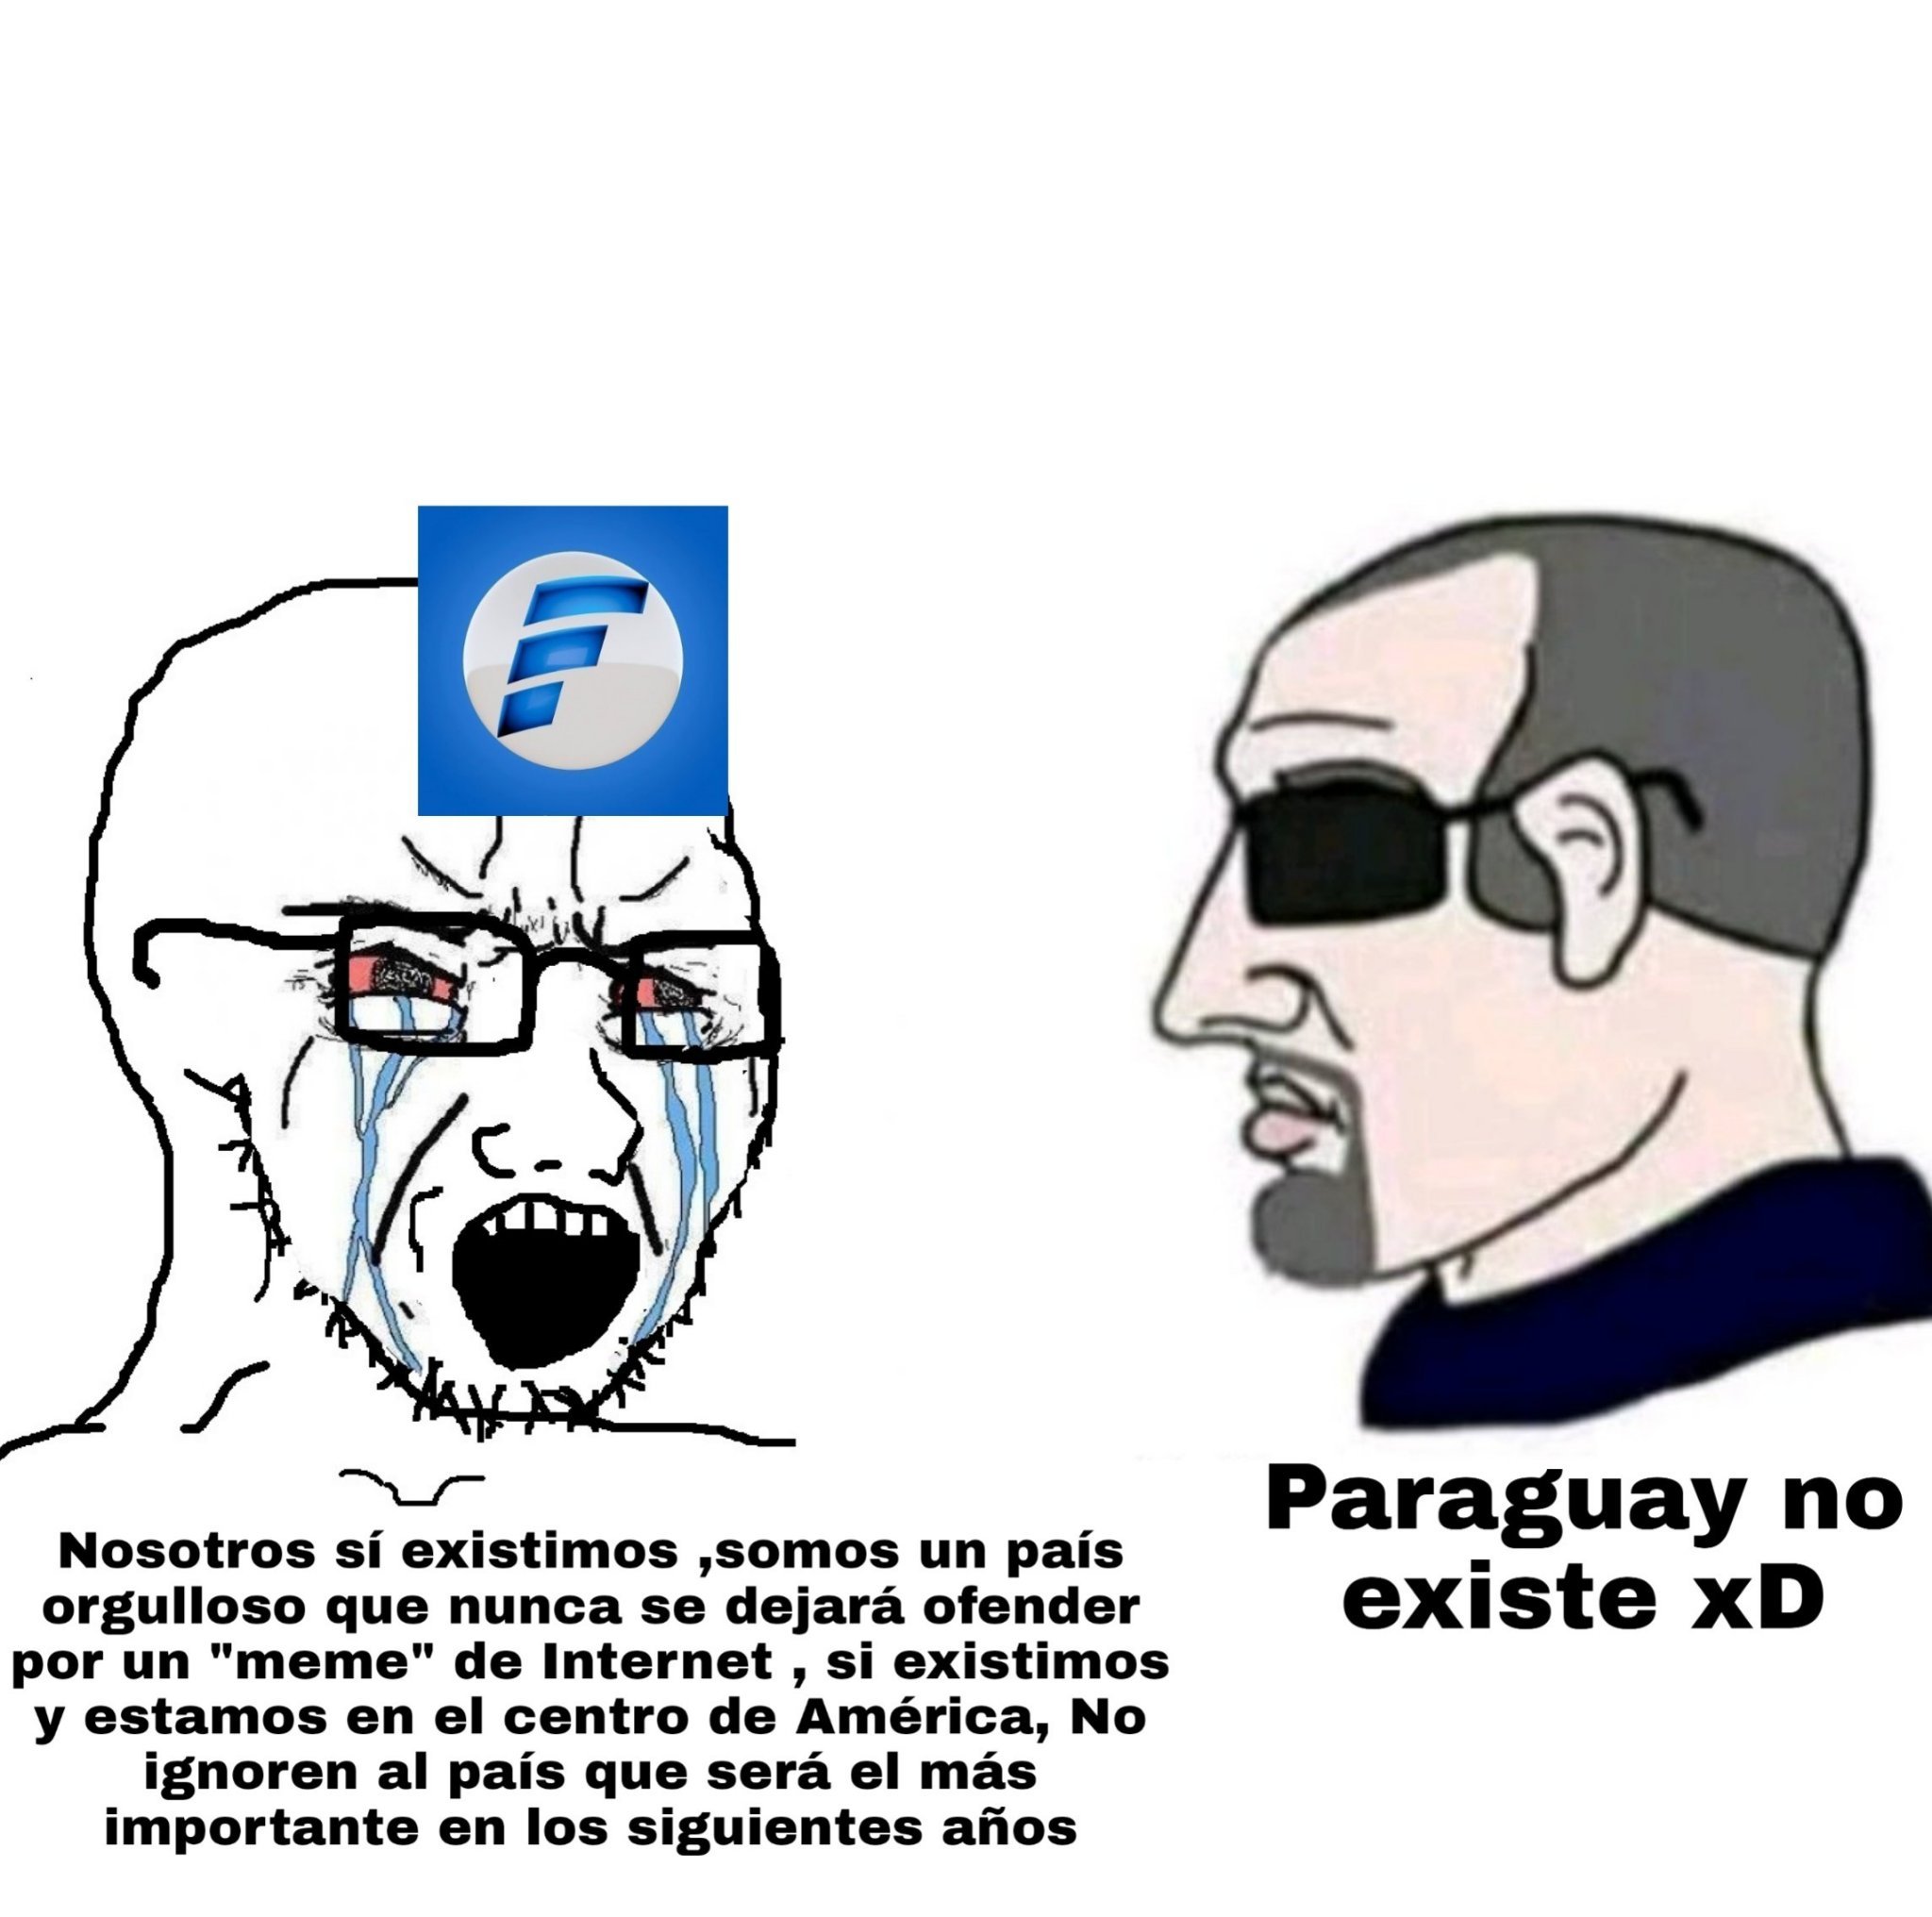 Paraguay no existe xD - meme